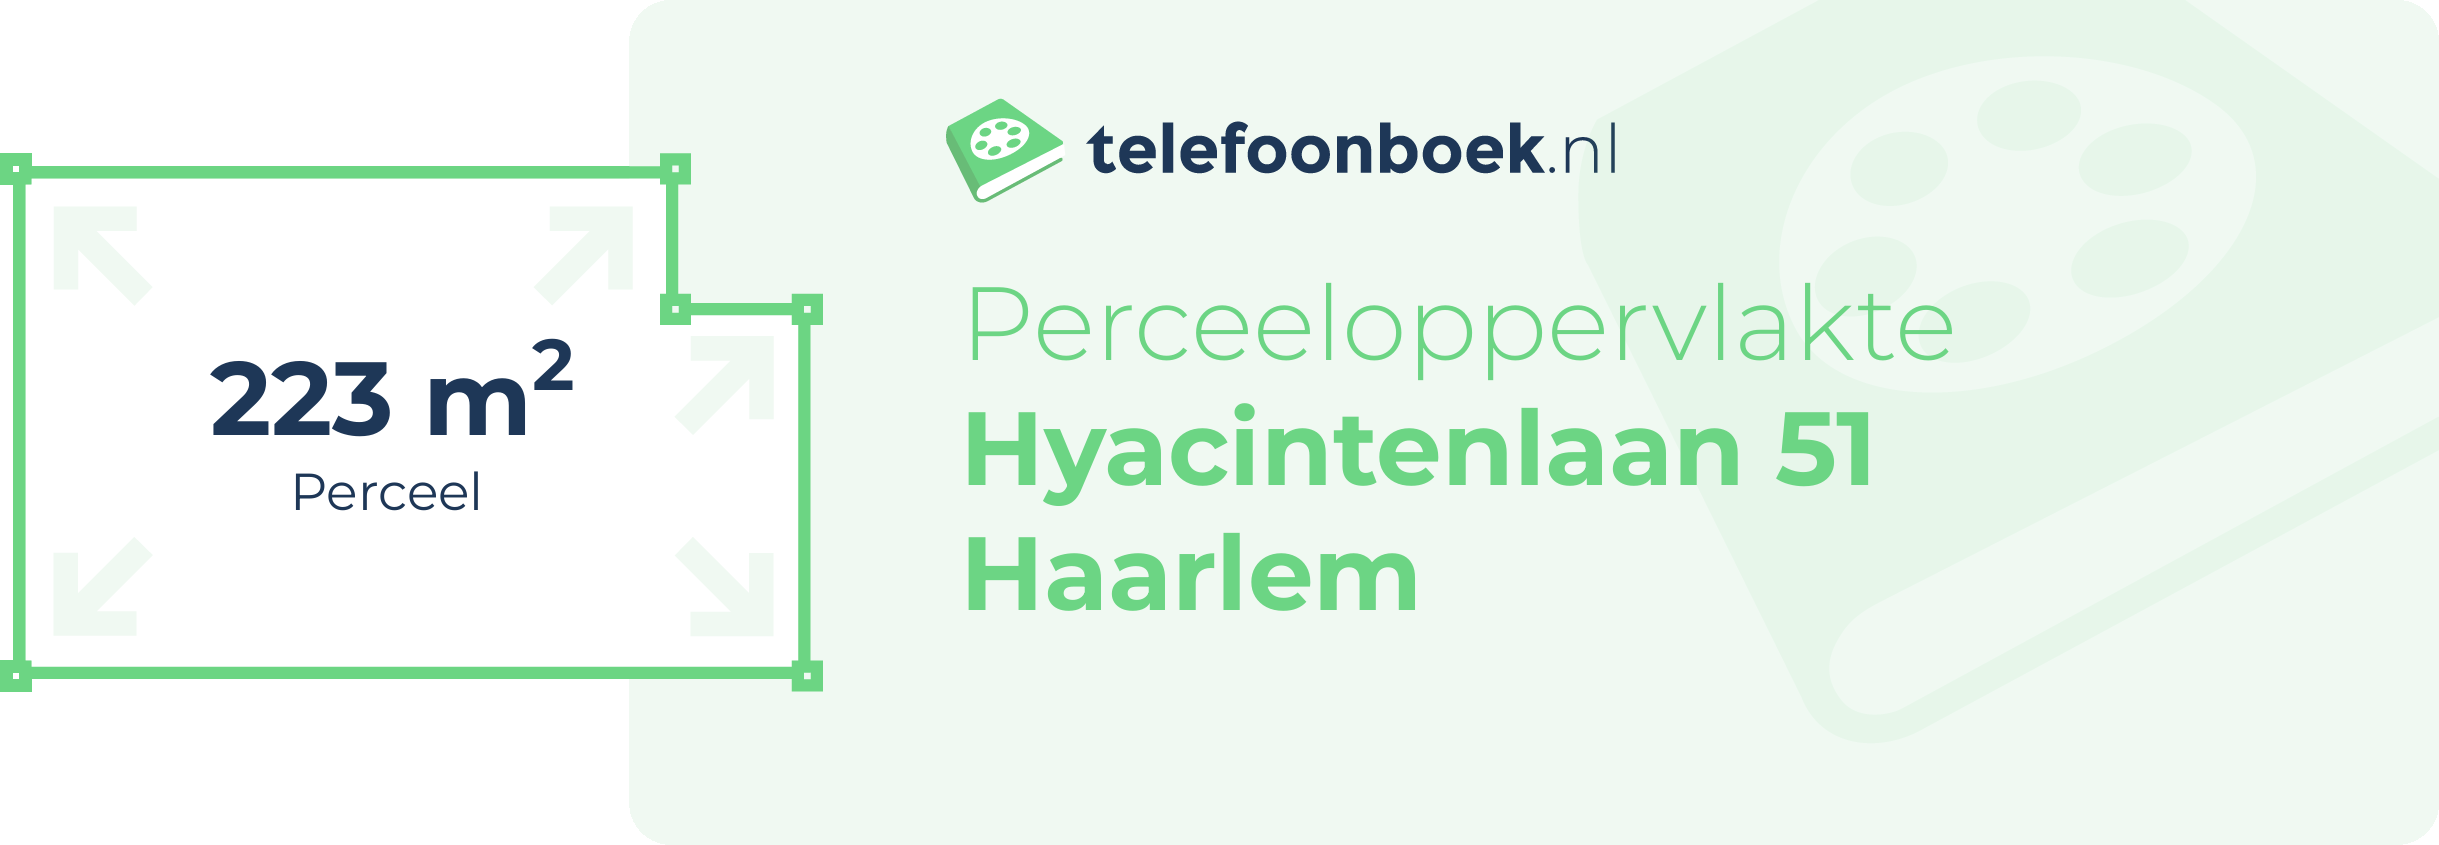 Perceeloppervlakte Hyacintenlaan 51 Haarlem